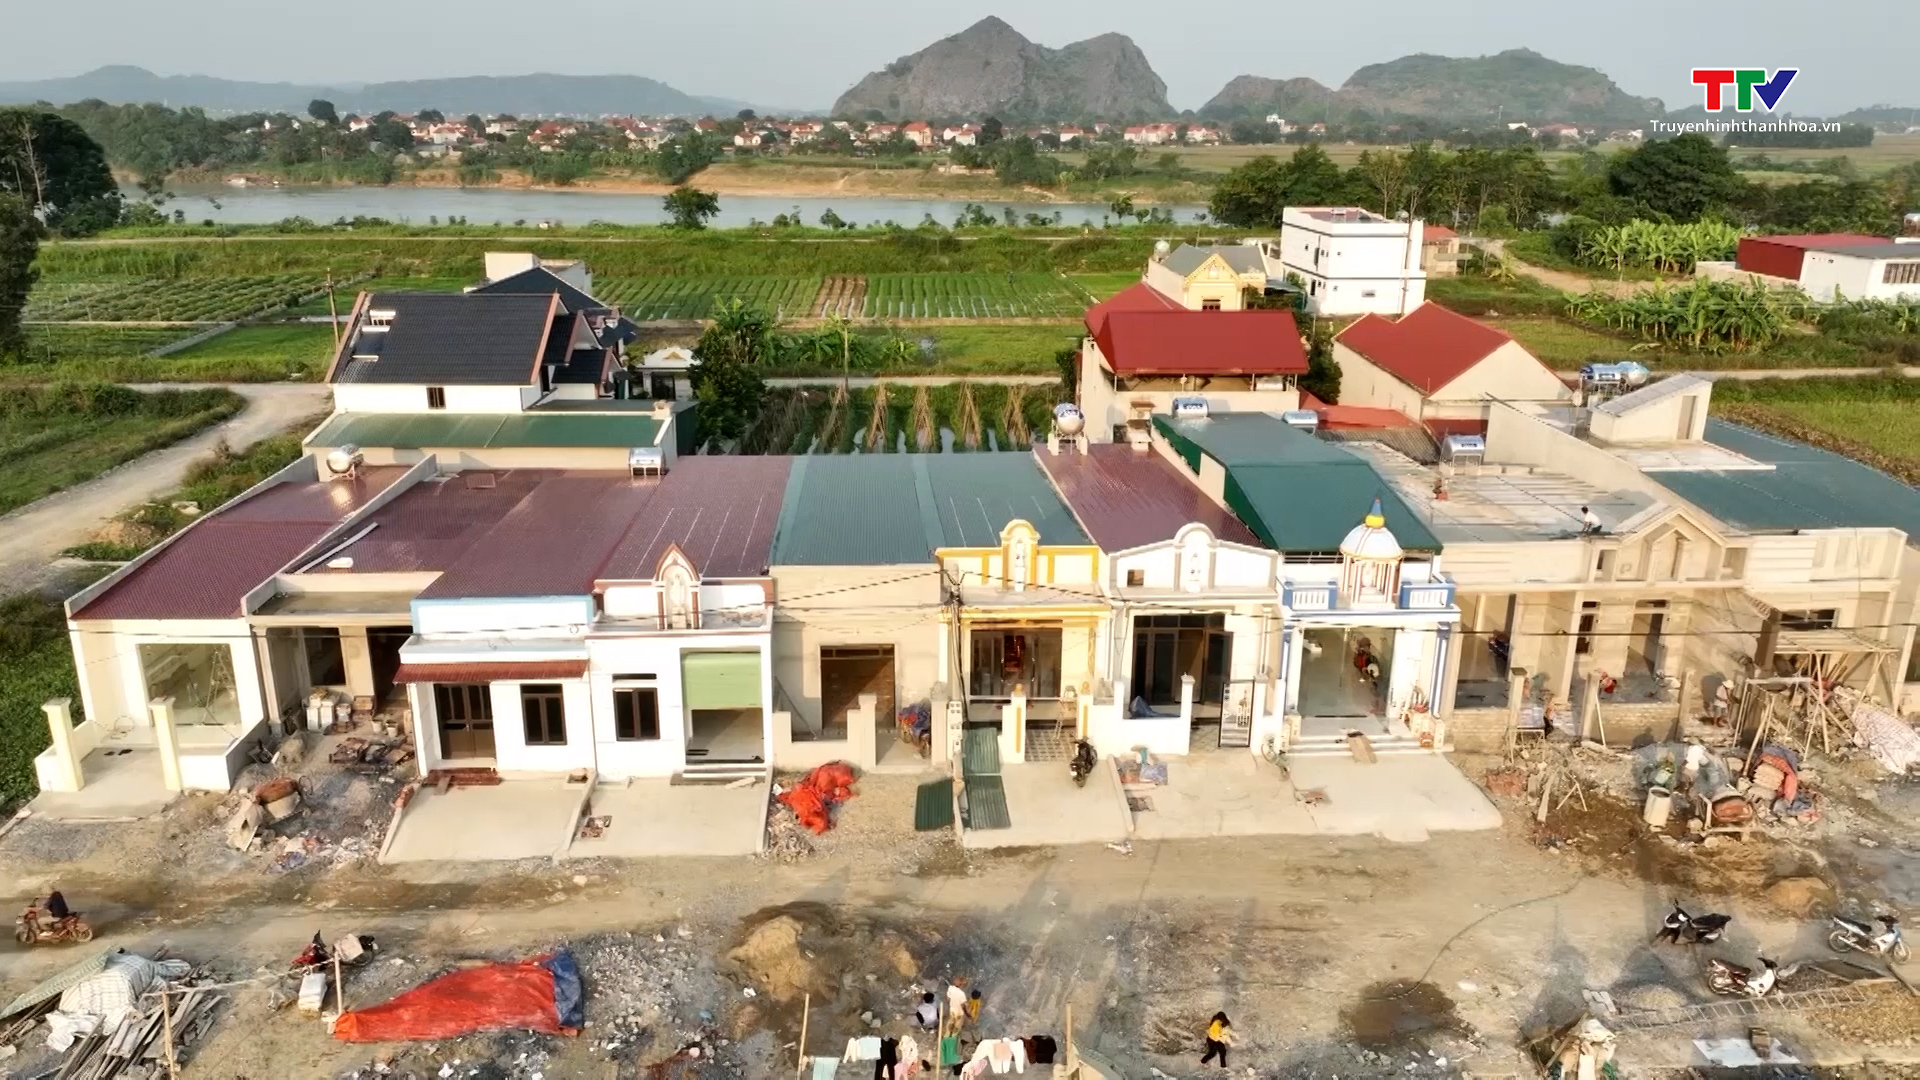 Huyện Yên Định cơ bản hoàn thành việc cấp đất, hỗ trợ làm nhà ở cho các hộ đồng bào trên sông - Ảnh 1.